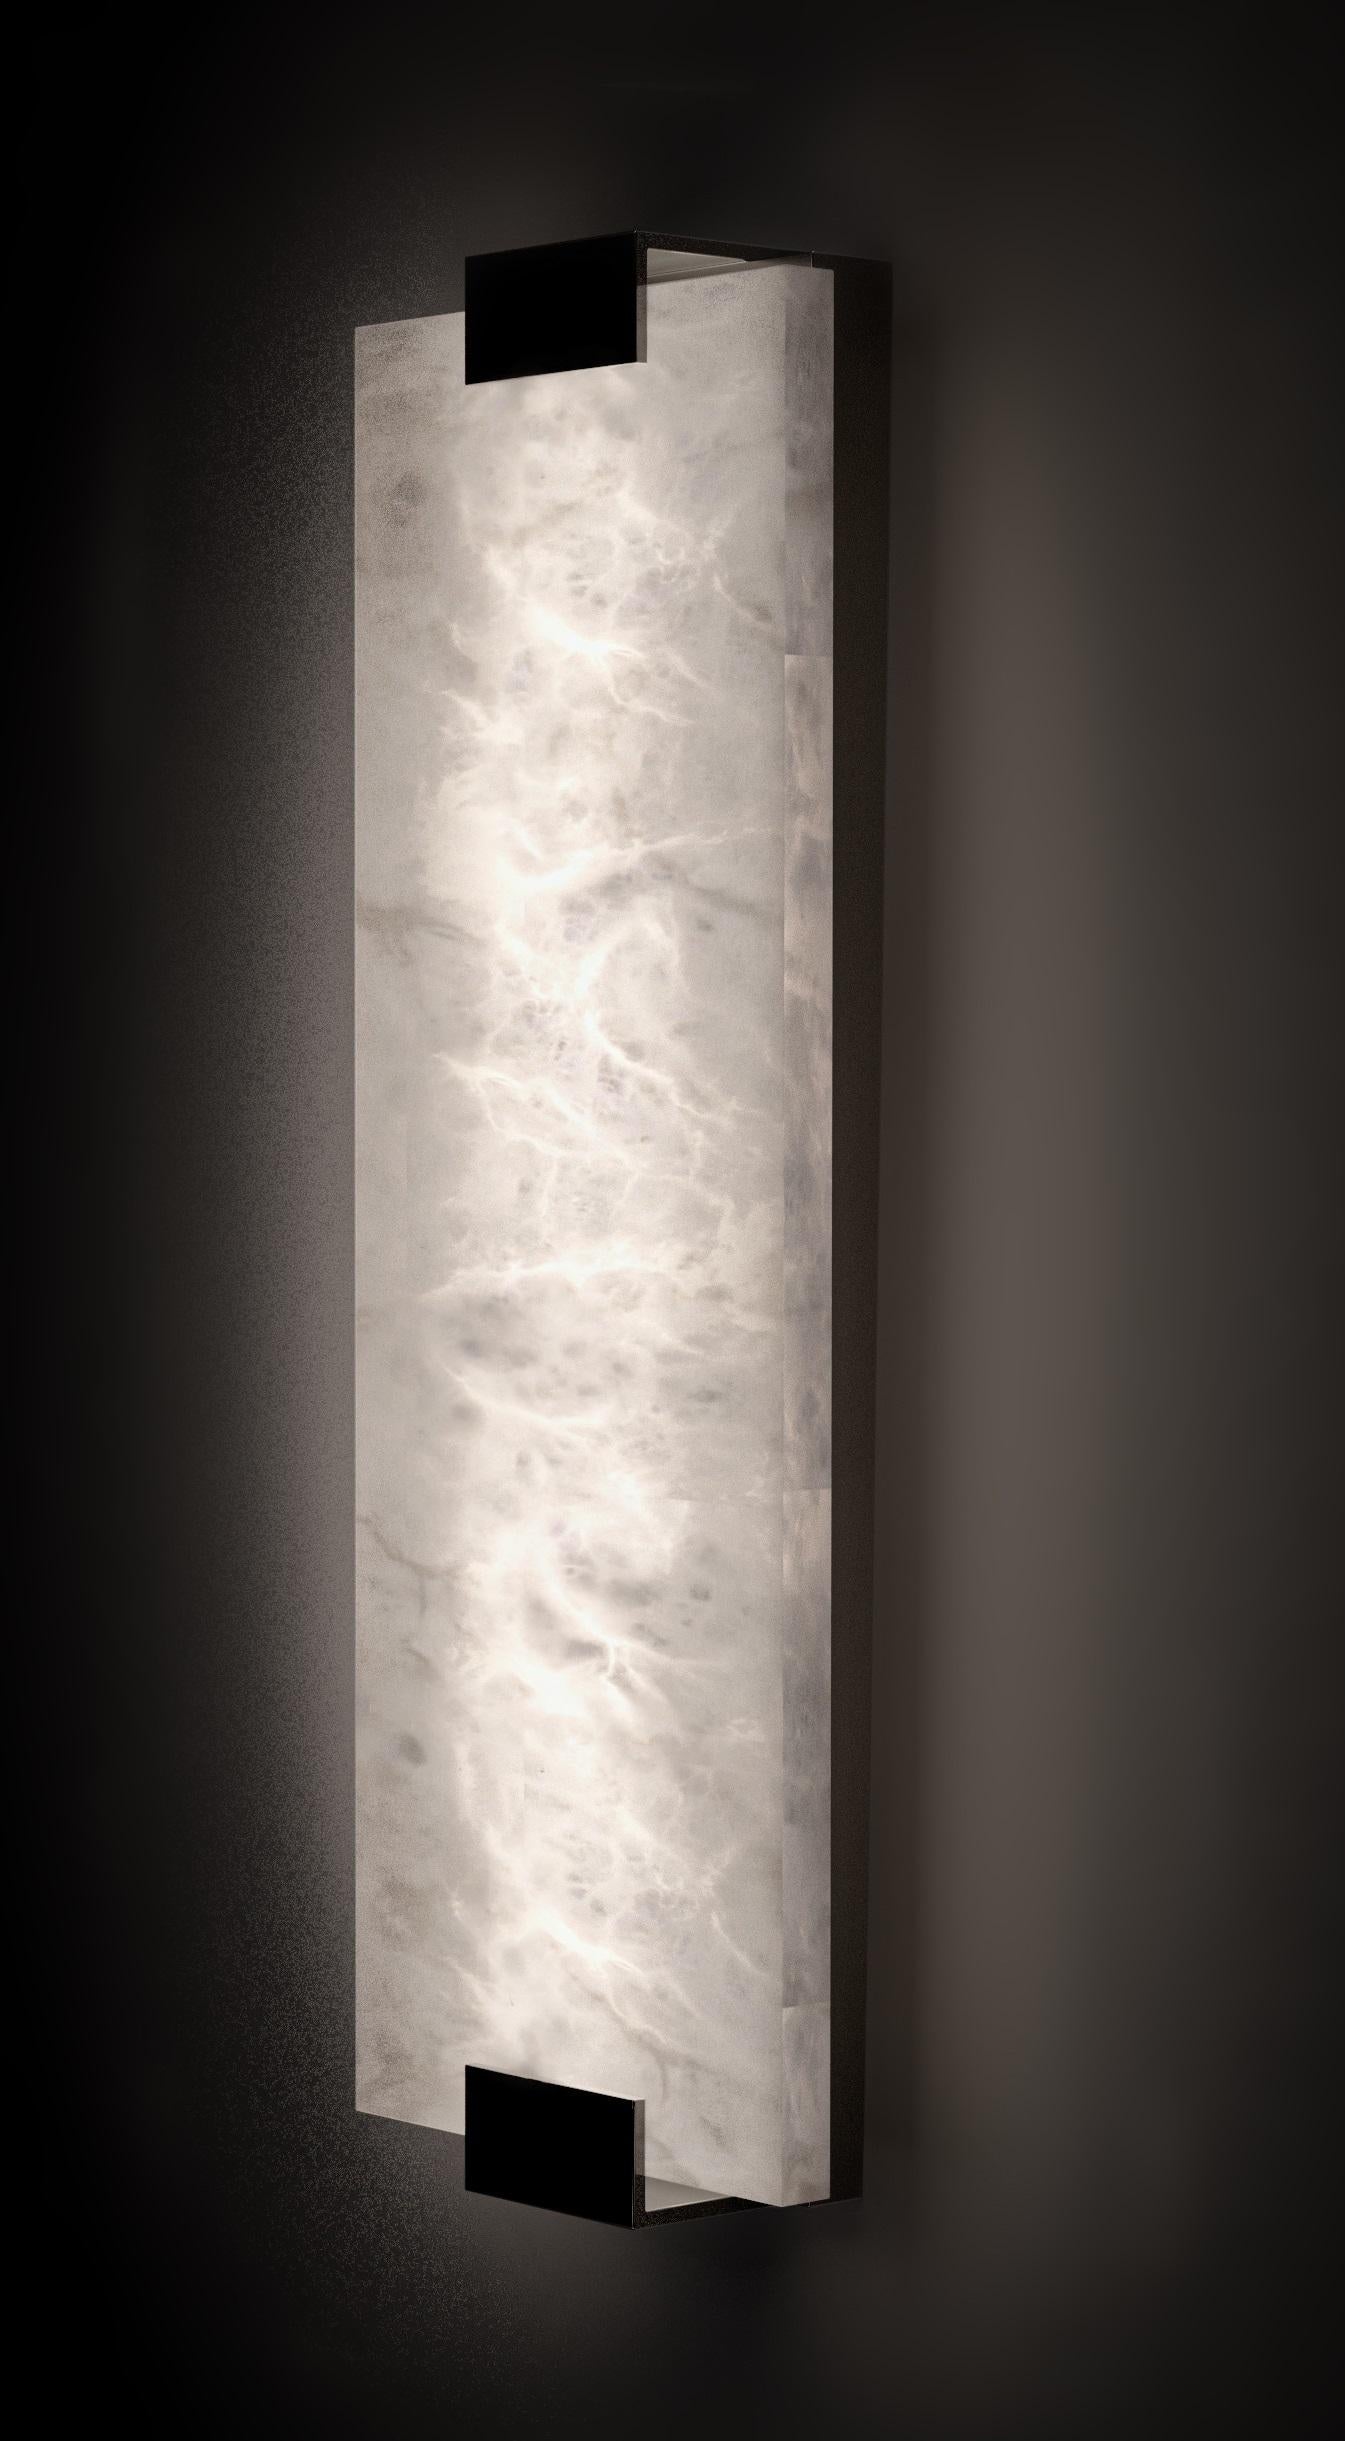 Kinkairo Medium Shiny Black Applique par Alabastro Italiano
Dimensions : Ø 20 x H 60 cm : Ø 20 x H 60 cm.
MATERIAL : Albâtre blanc et métal noir brillant.

Disponible en différentes finitions : Argent brillant, Bronze, Laiton brossé, Ruggine de